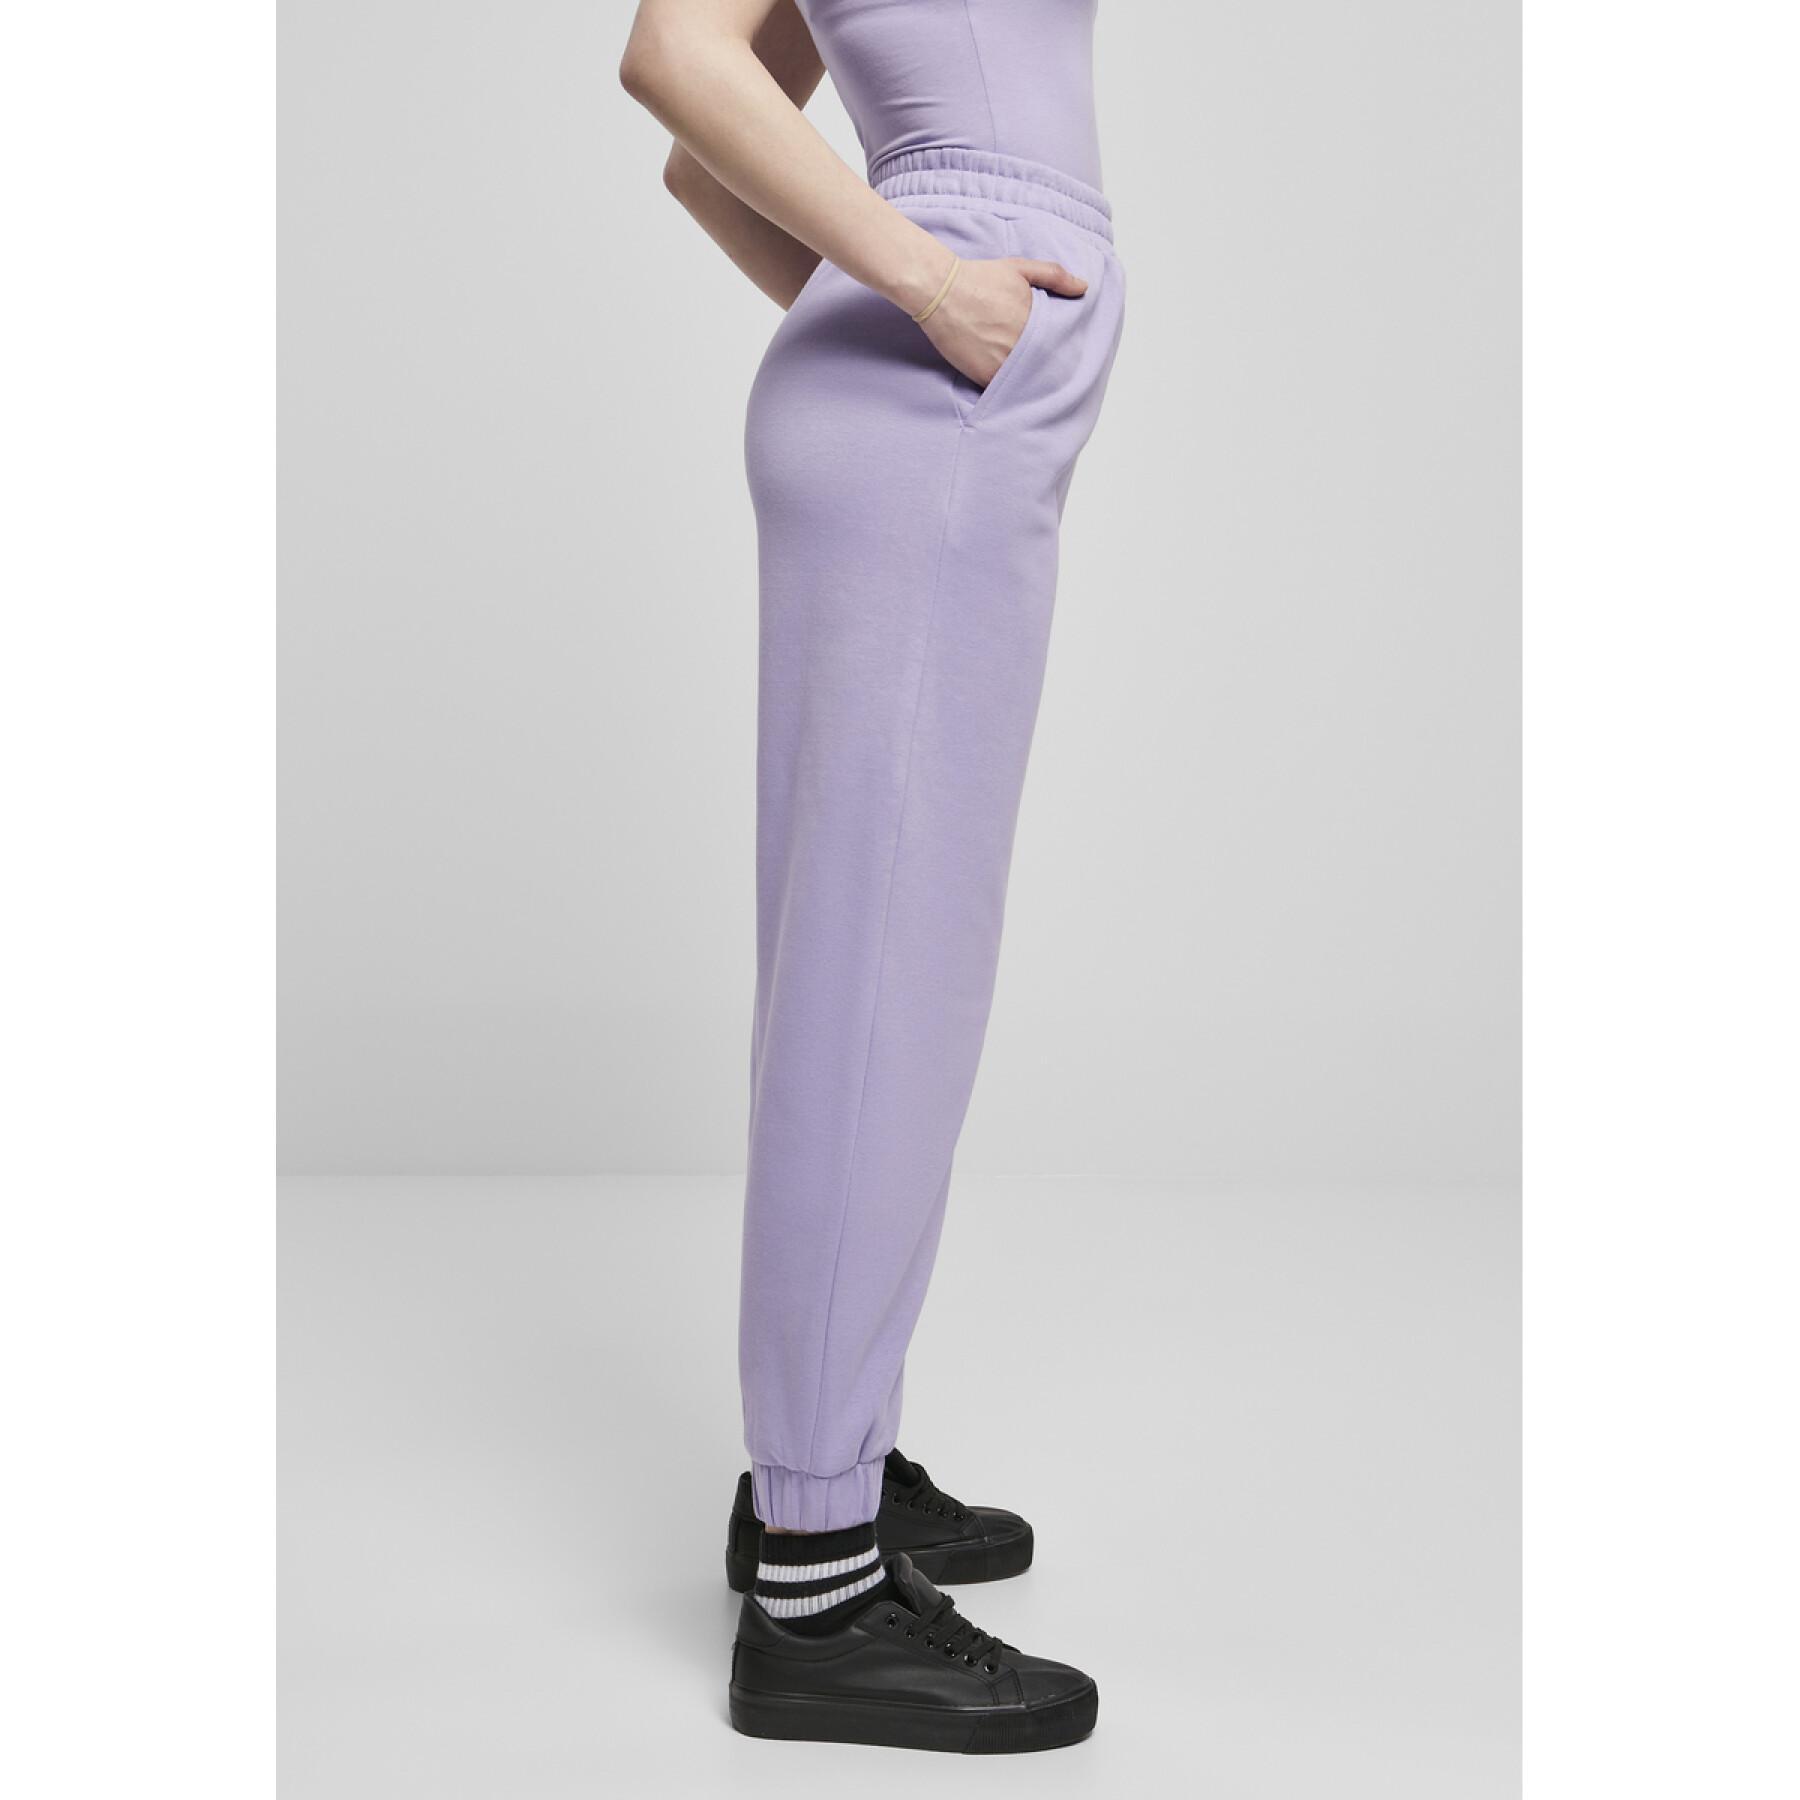 Pantalones de mujer Urban Classics organic talla tiro alto-grandes tallas